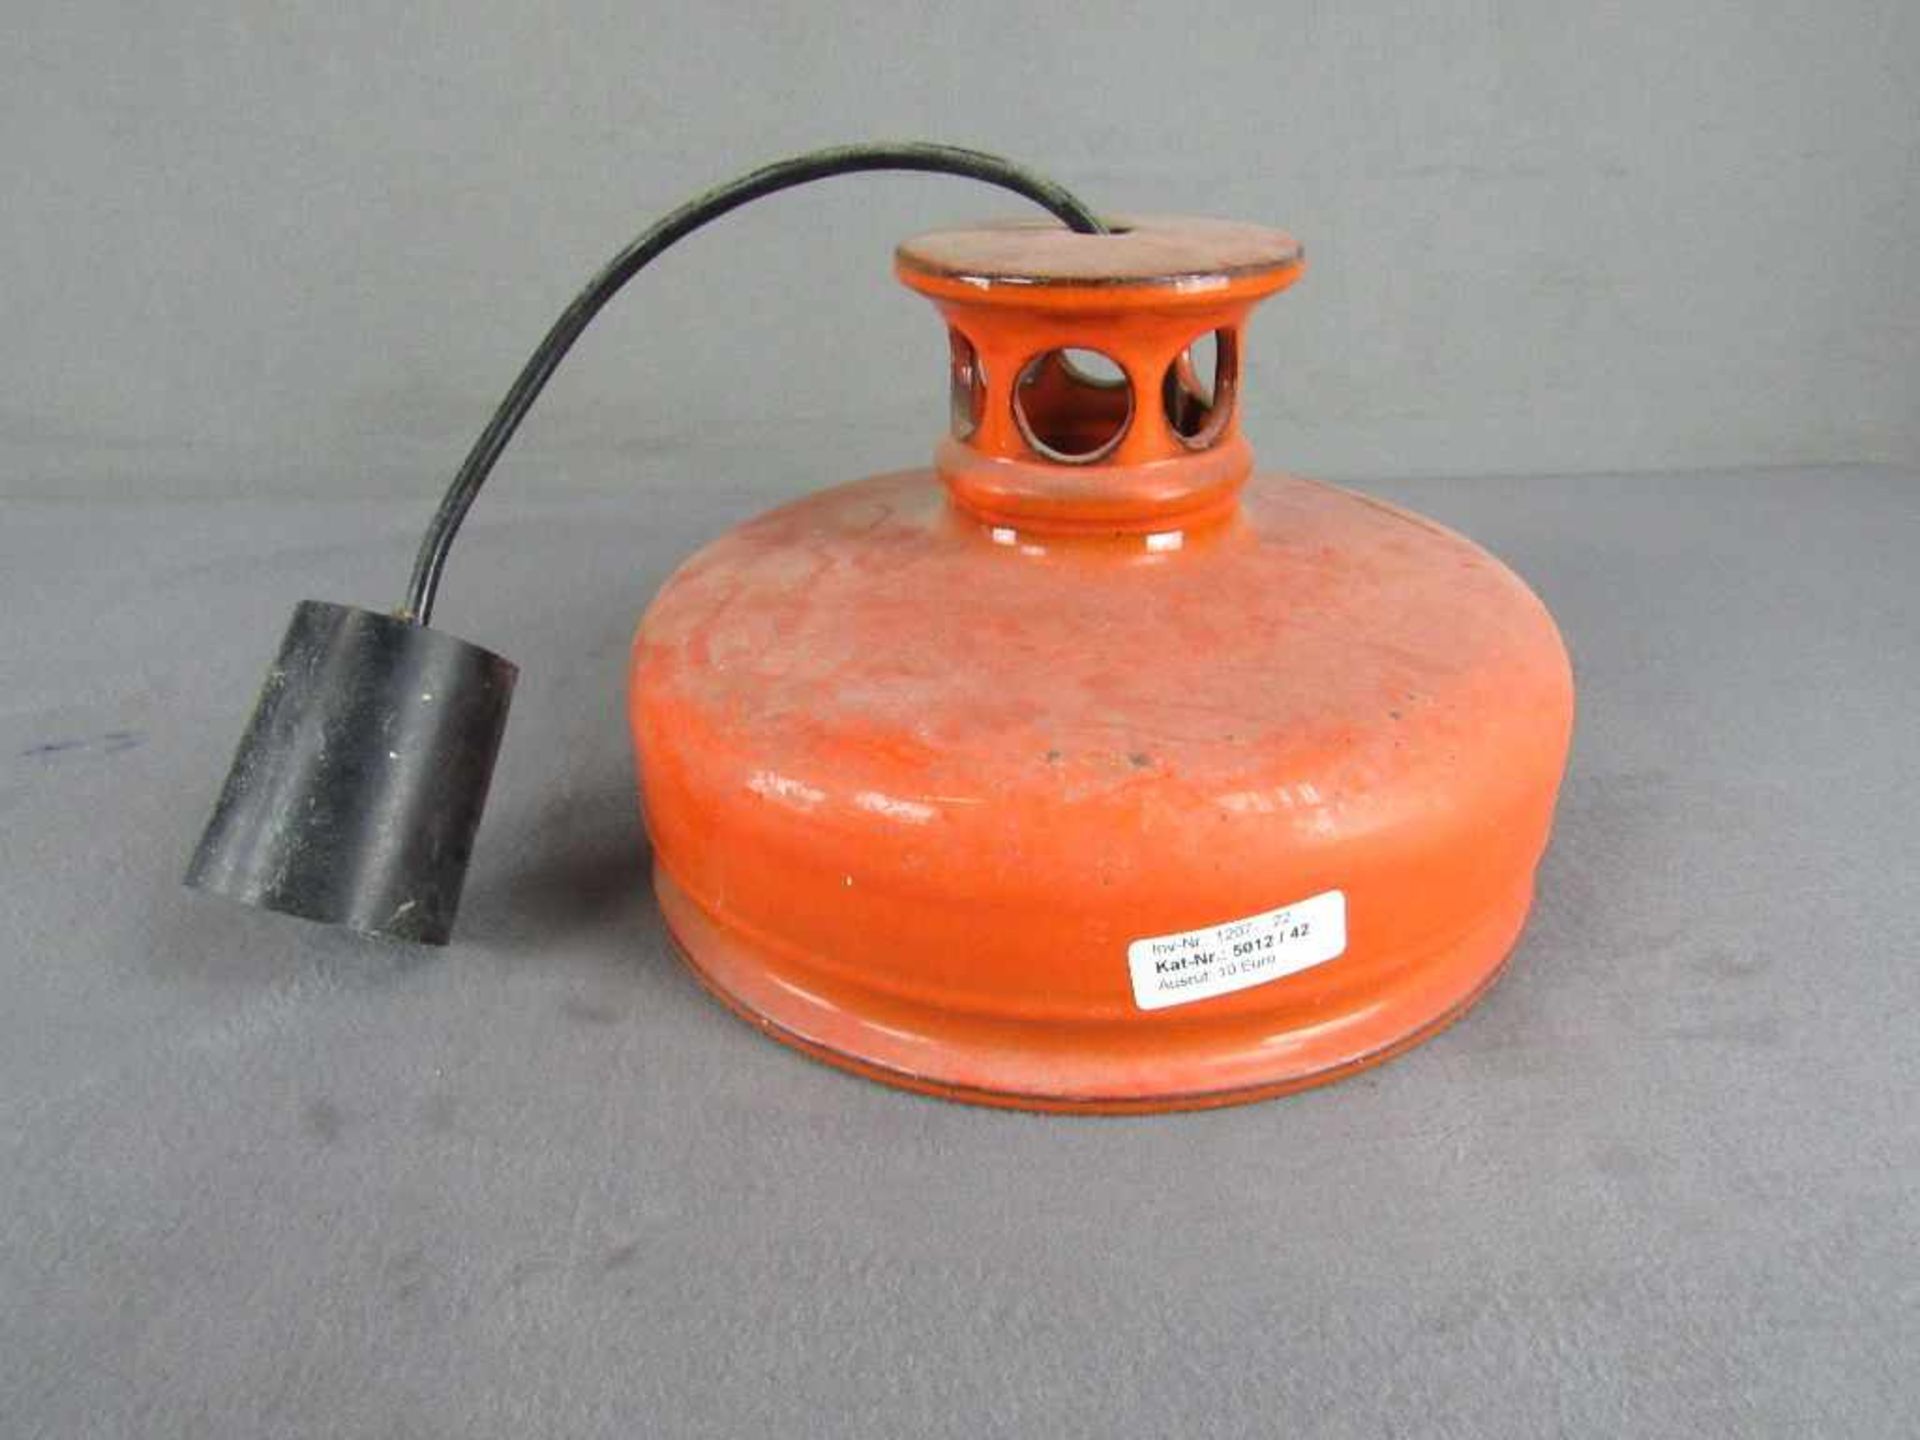 Space Age 70er Jahre Deckenlampe Orange 28,5cm Durchmesser- - -20.00 % buyer's premium on the hammer